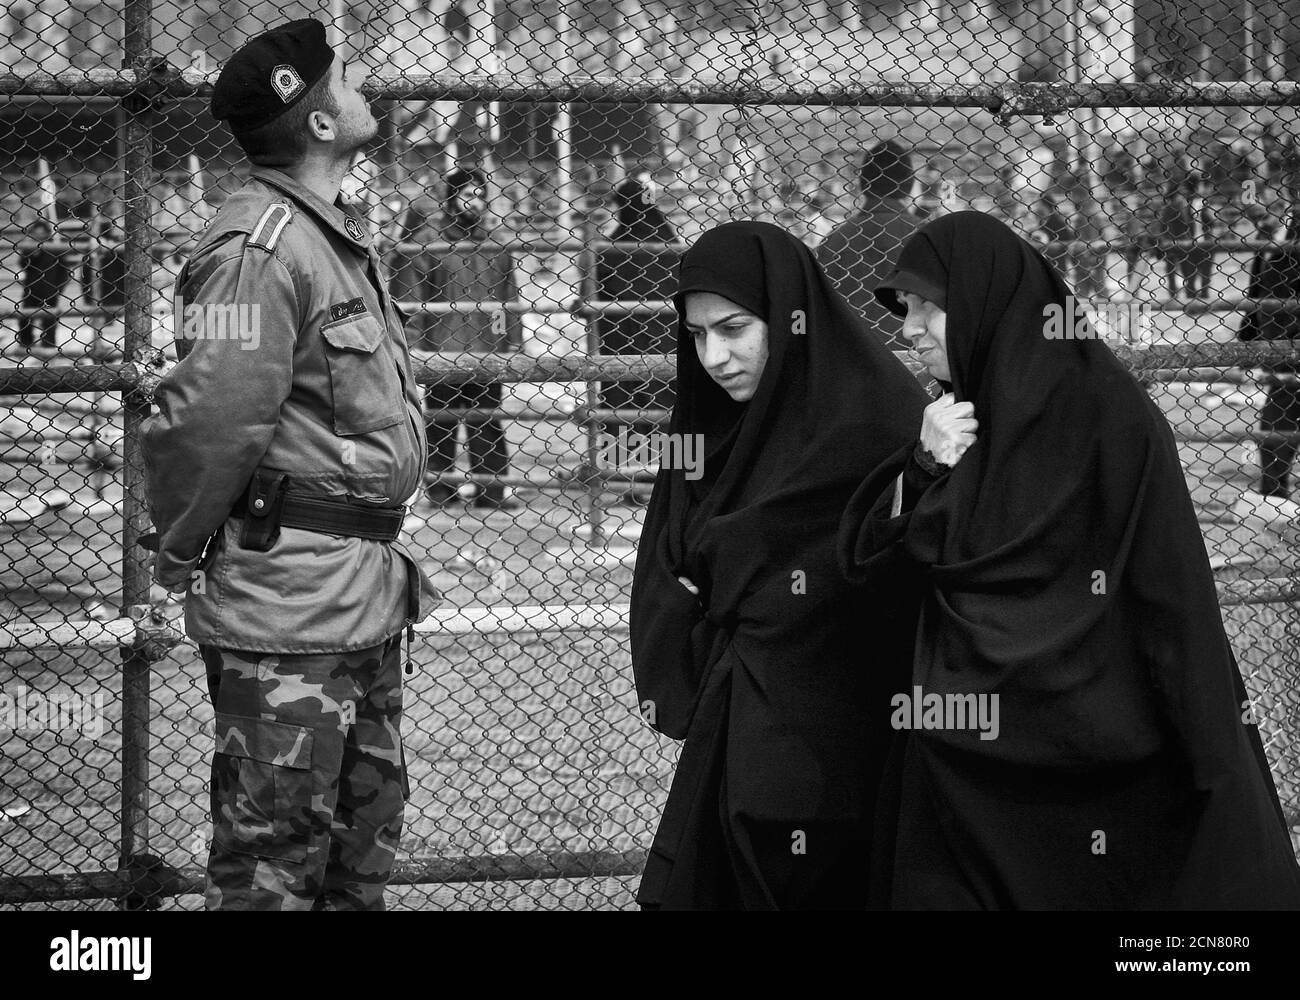 Teheran, Iran - Februar 11,2008 : die moralische Polizei schränkt die Freiheit der Menschen ein.im Iran müssen Frauen Burkas auf der Straße tragen. Stockfoto